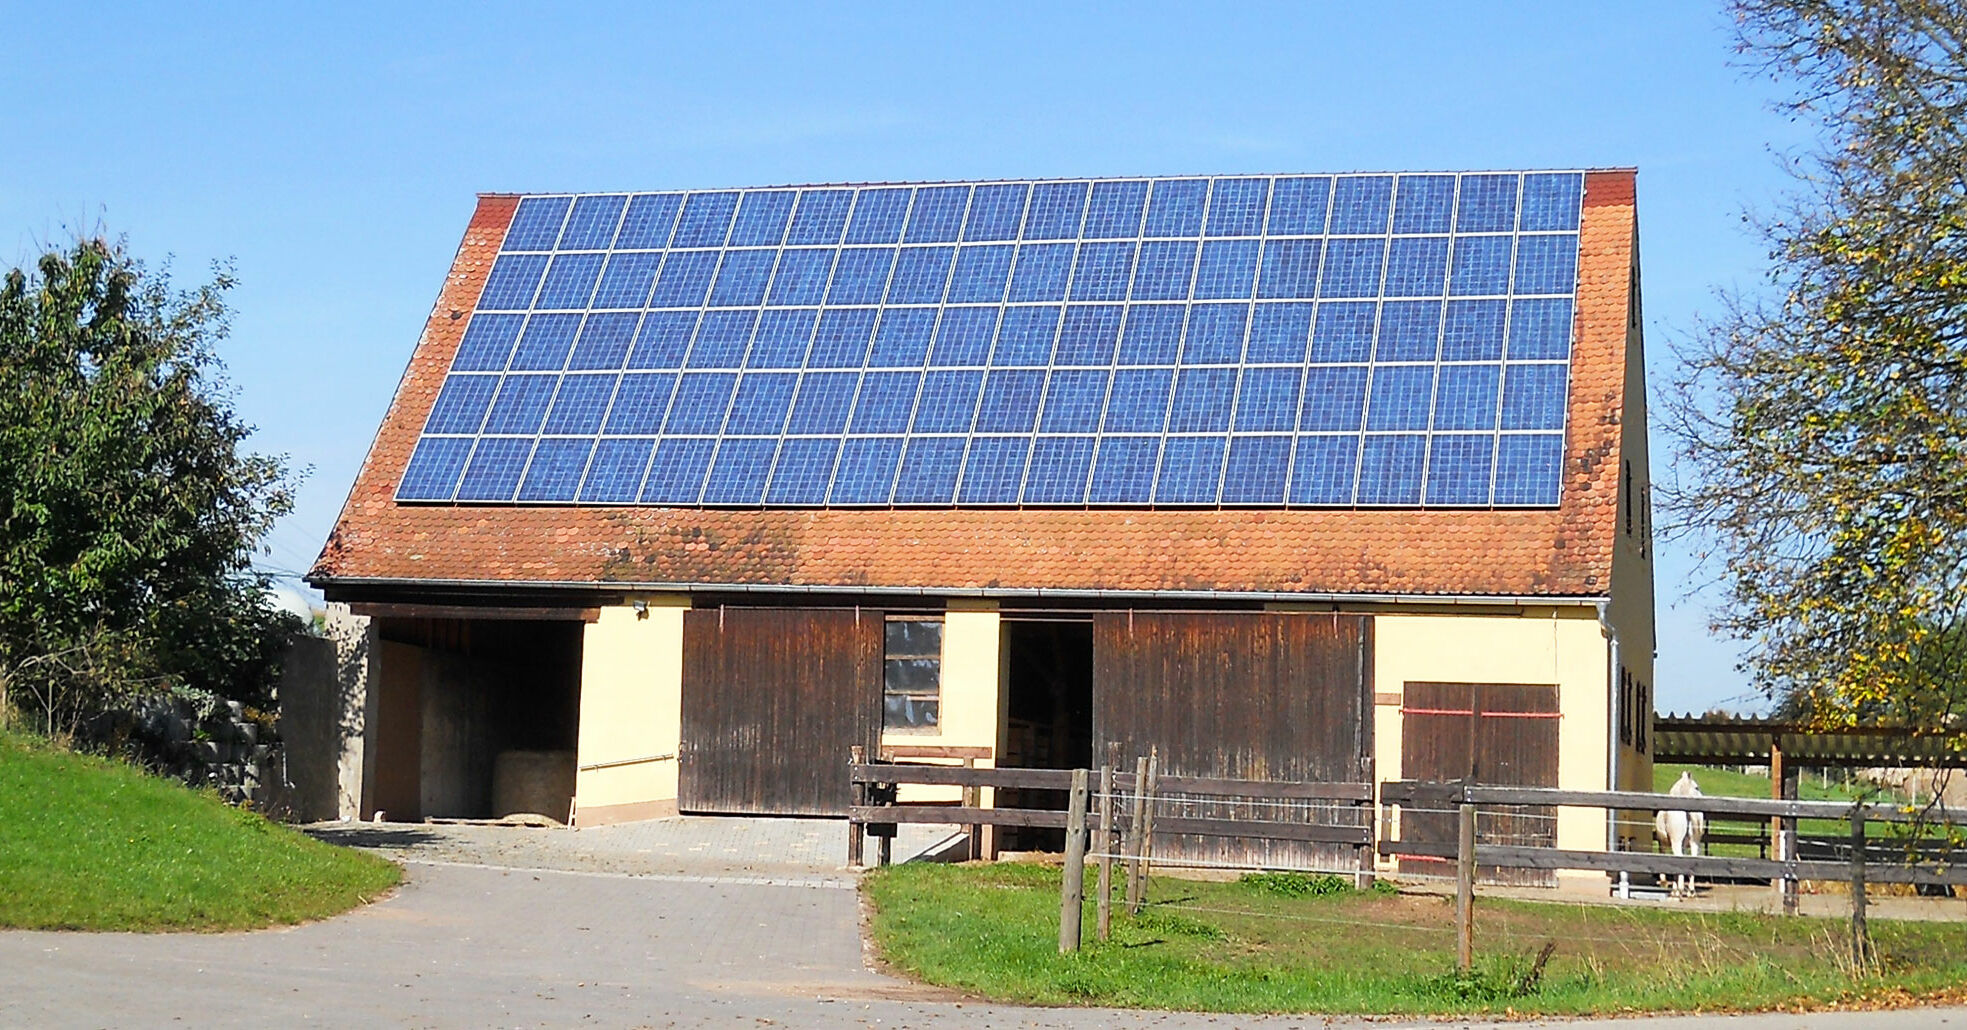 FRANKE Ihr Partner für Photovoltaik: Lohnt sich Photovoltaik? Immer!